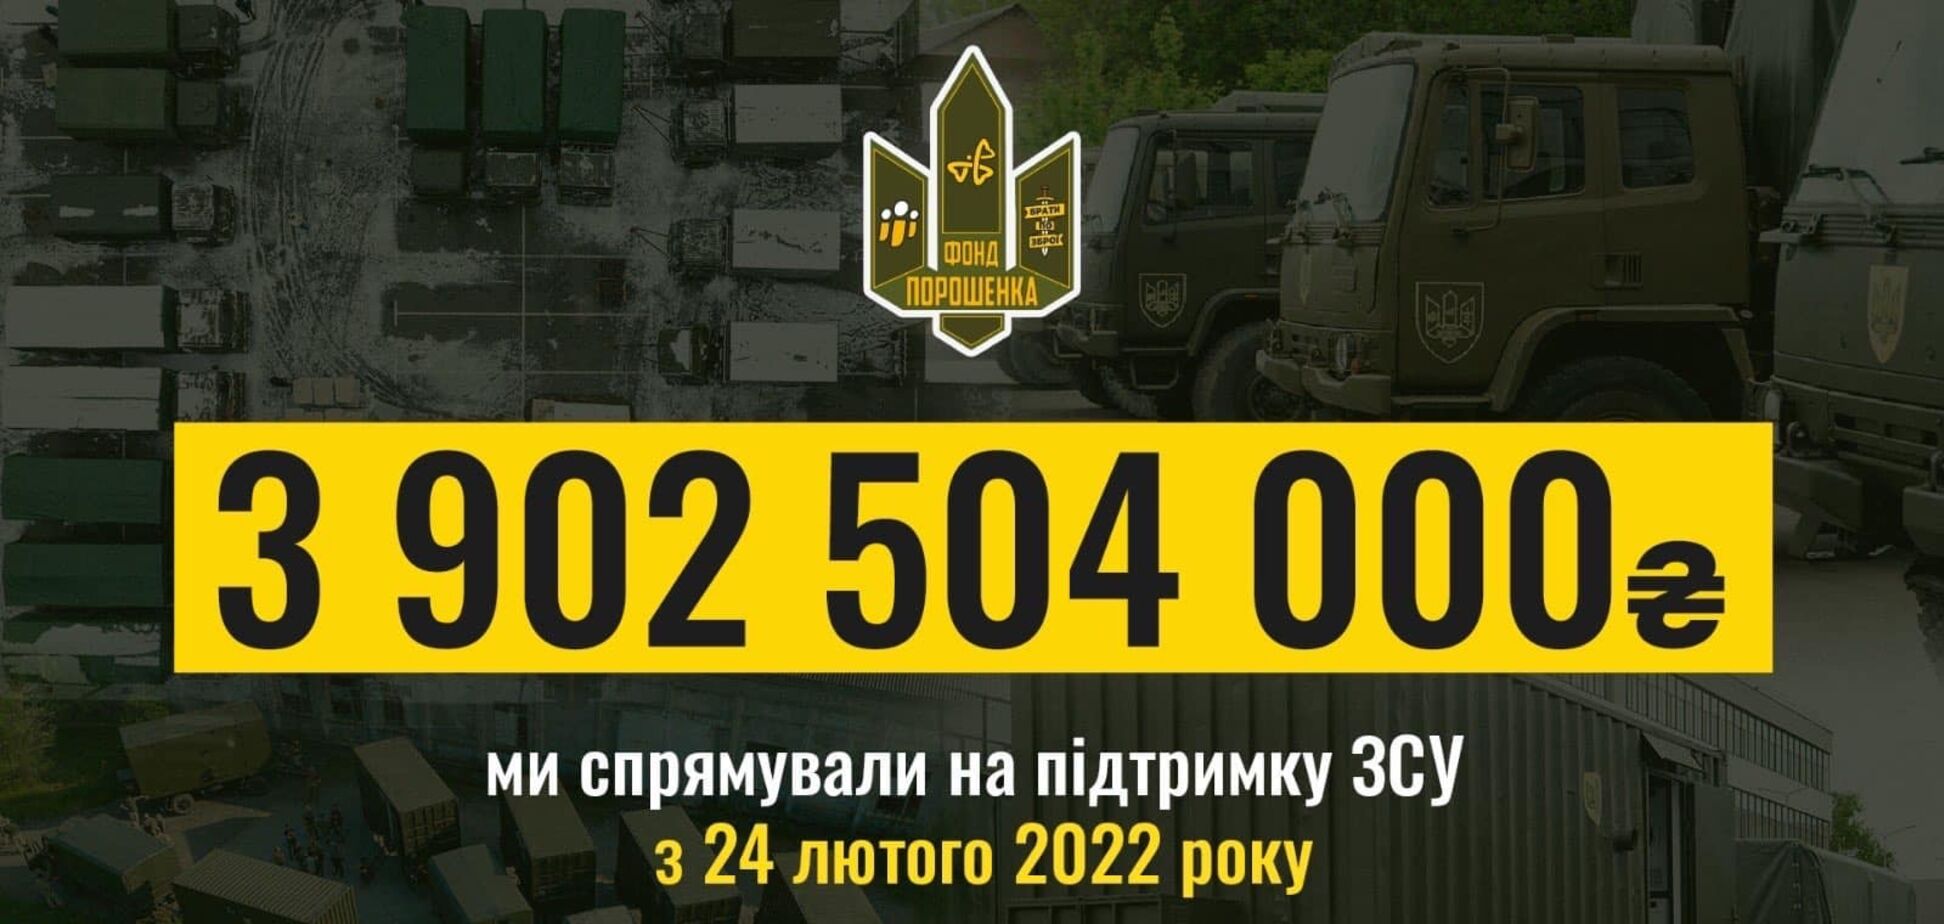 3,9 млрд грн: Порошенко отчитался о помощи армии с начала полномасштабного вторжения